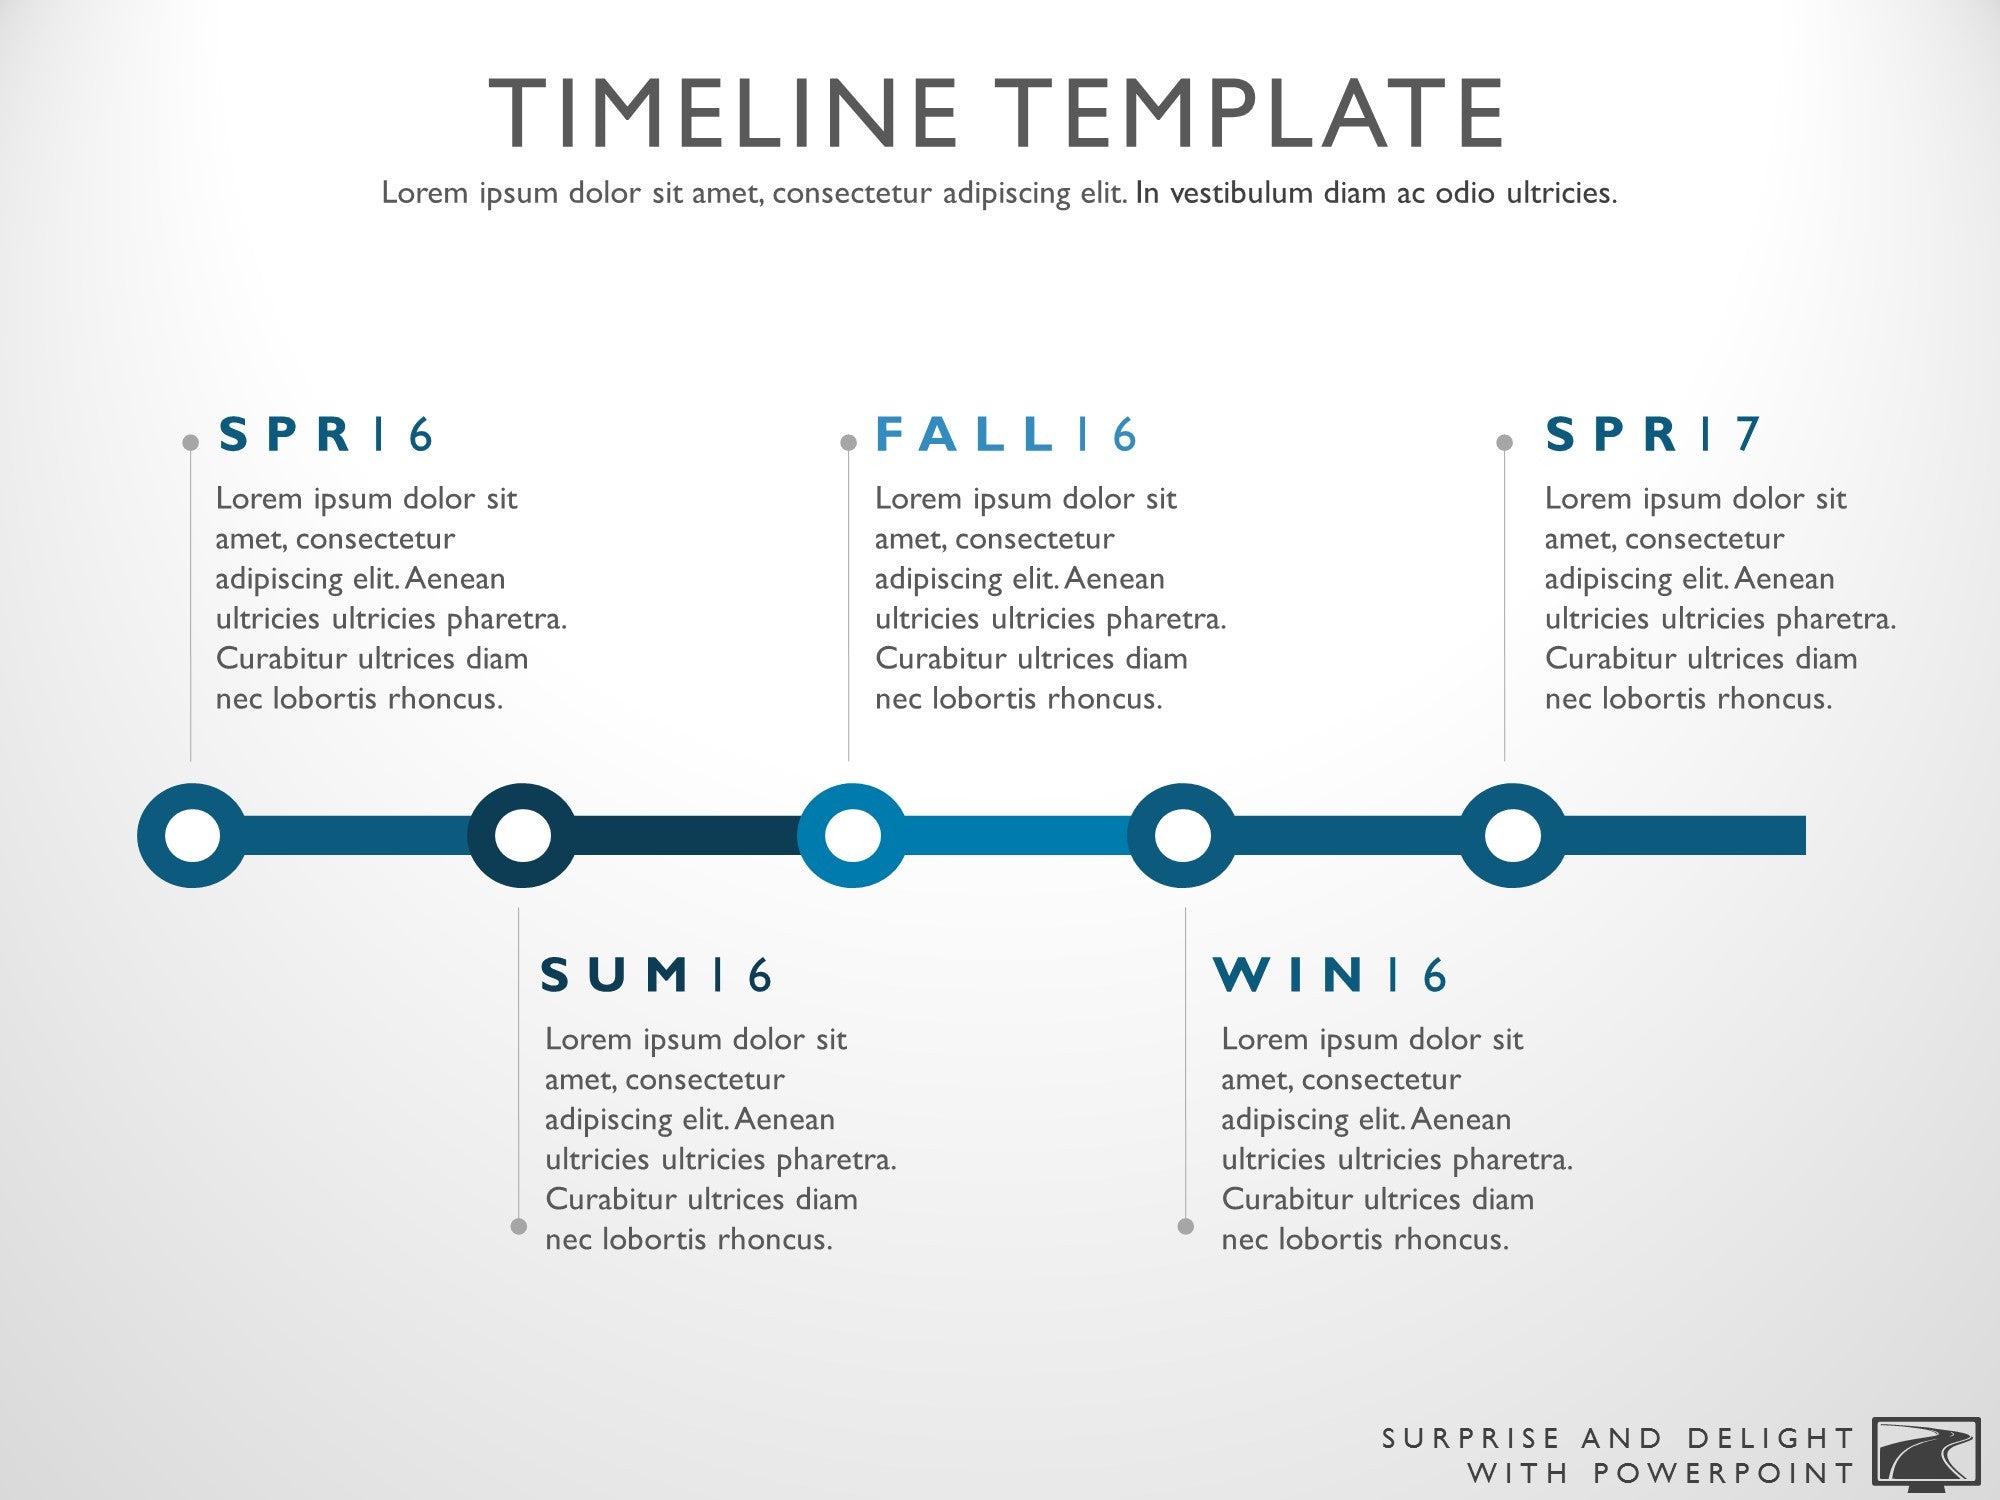 creative timeline template